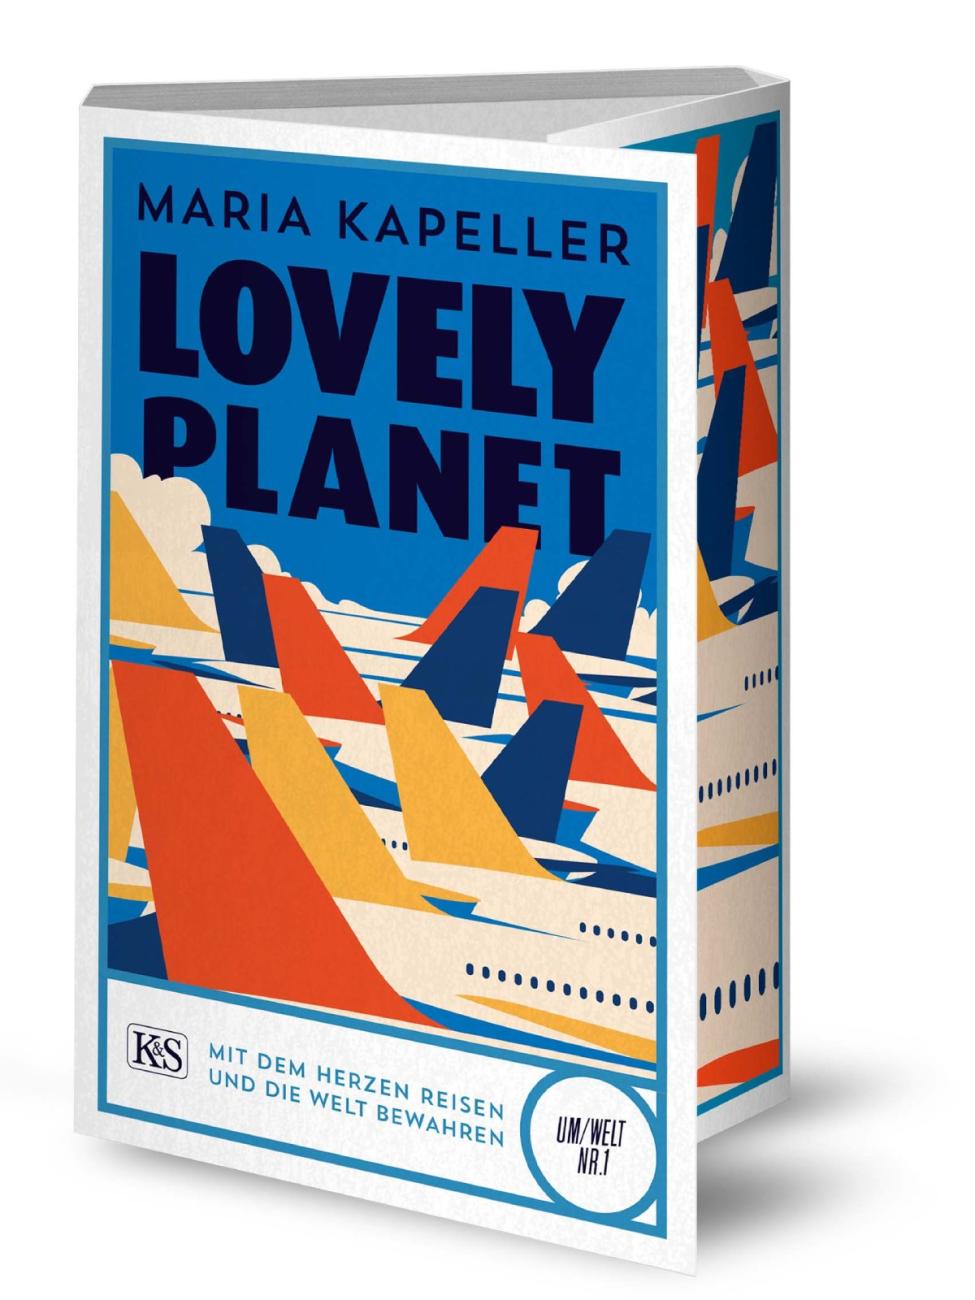 Buch Cover von lovely planet von Maria Kapeller: Blauer Hintergrund mit mehreren Flugzeugen